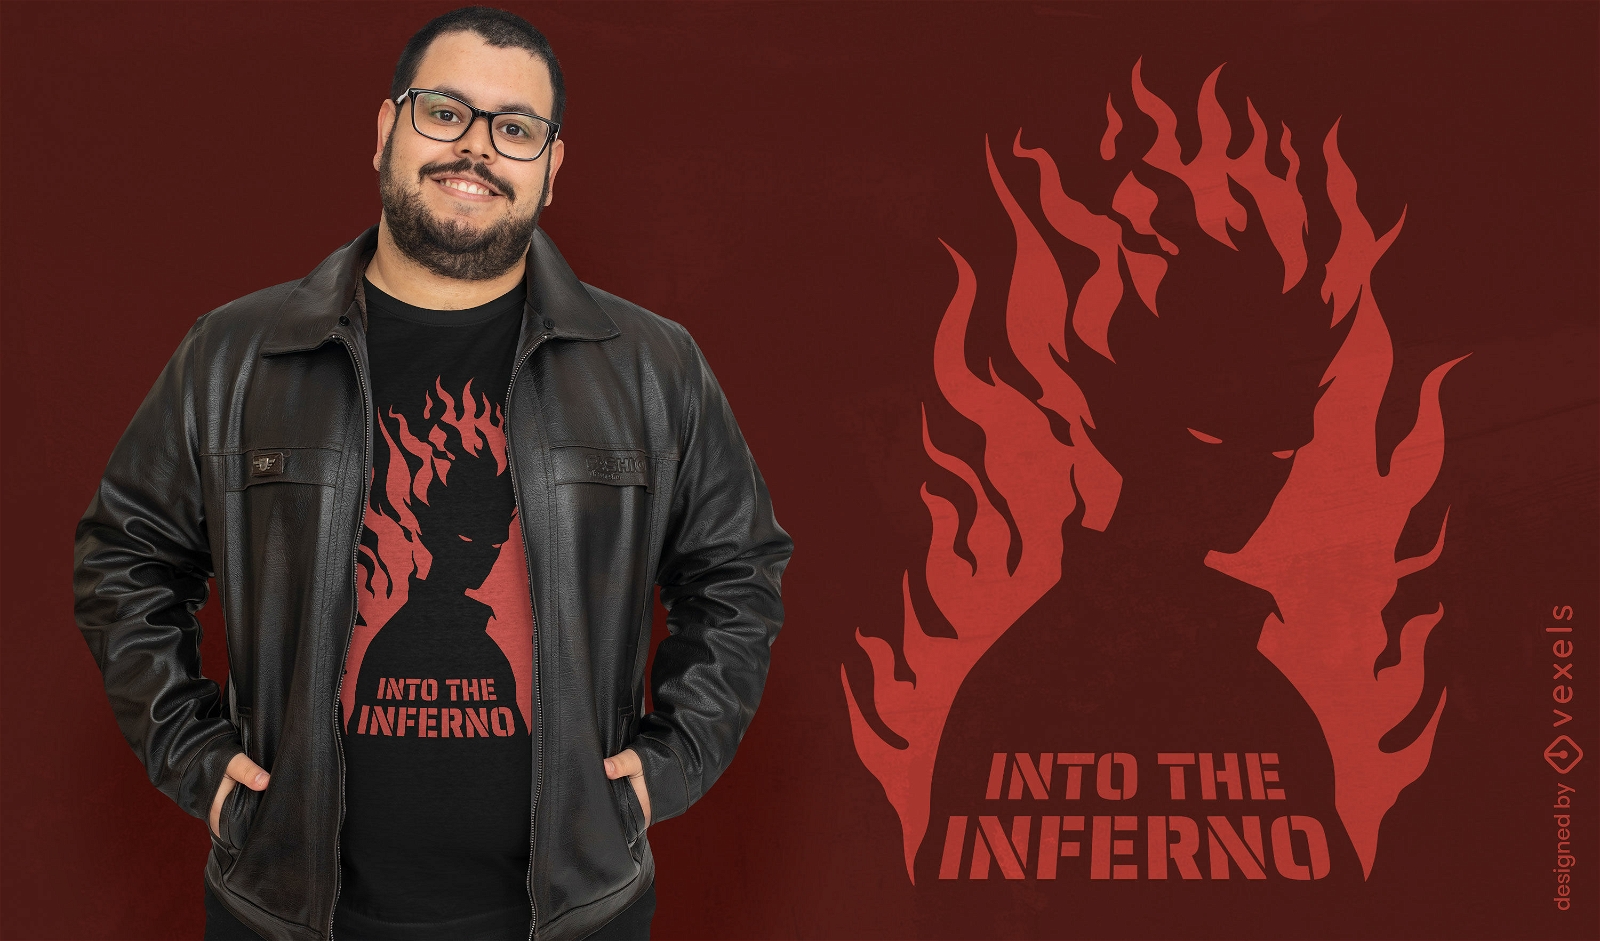 In das Inferno-T-Shirt-Design